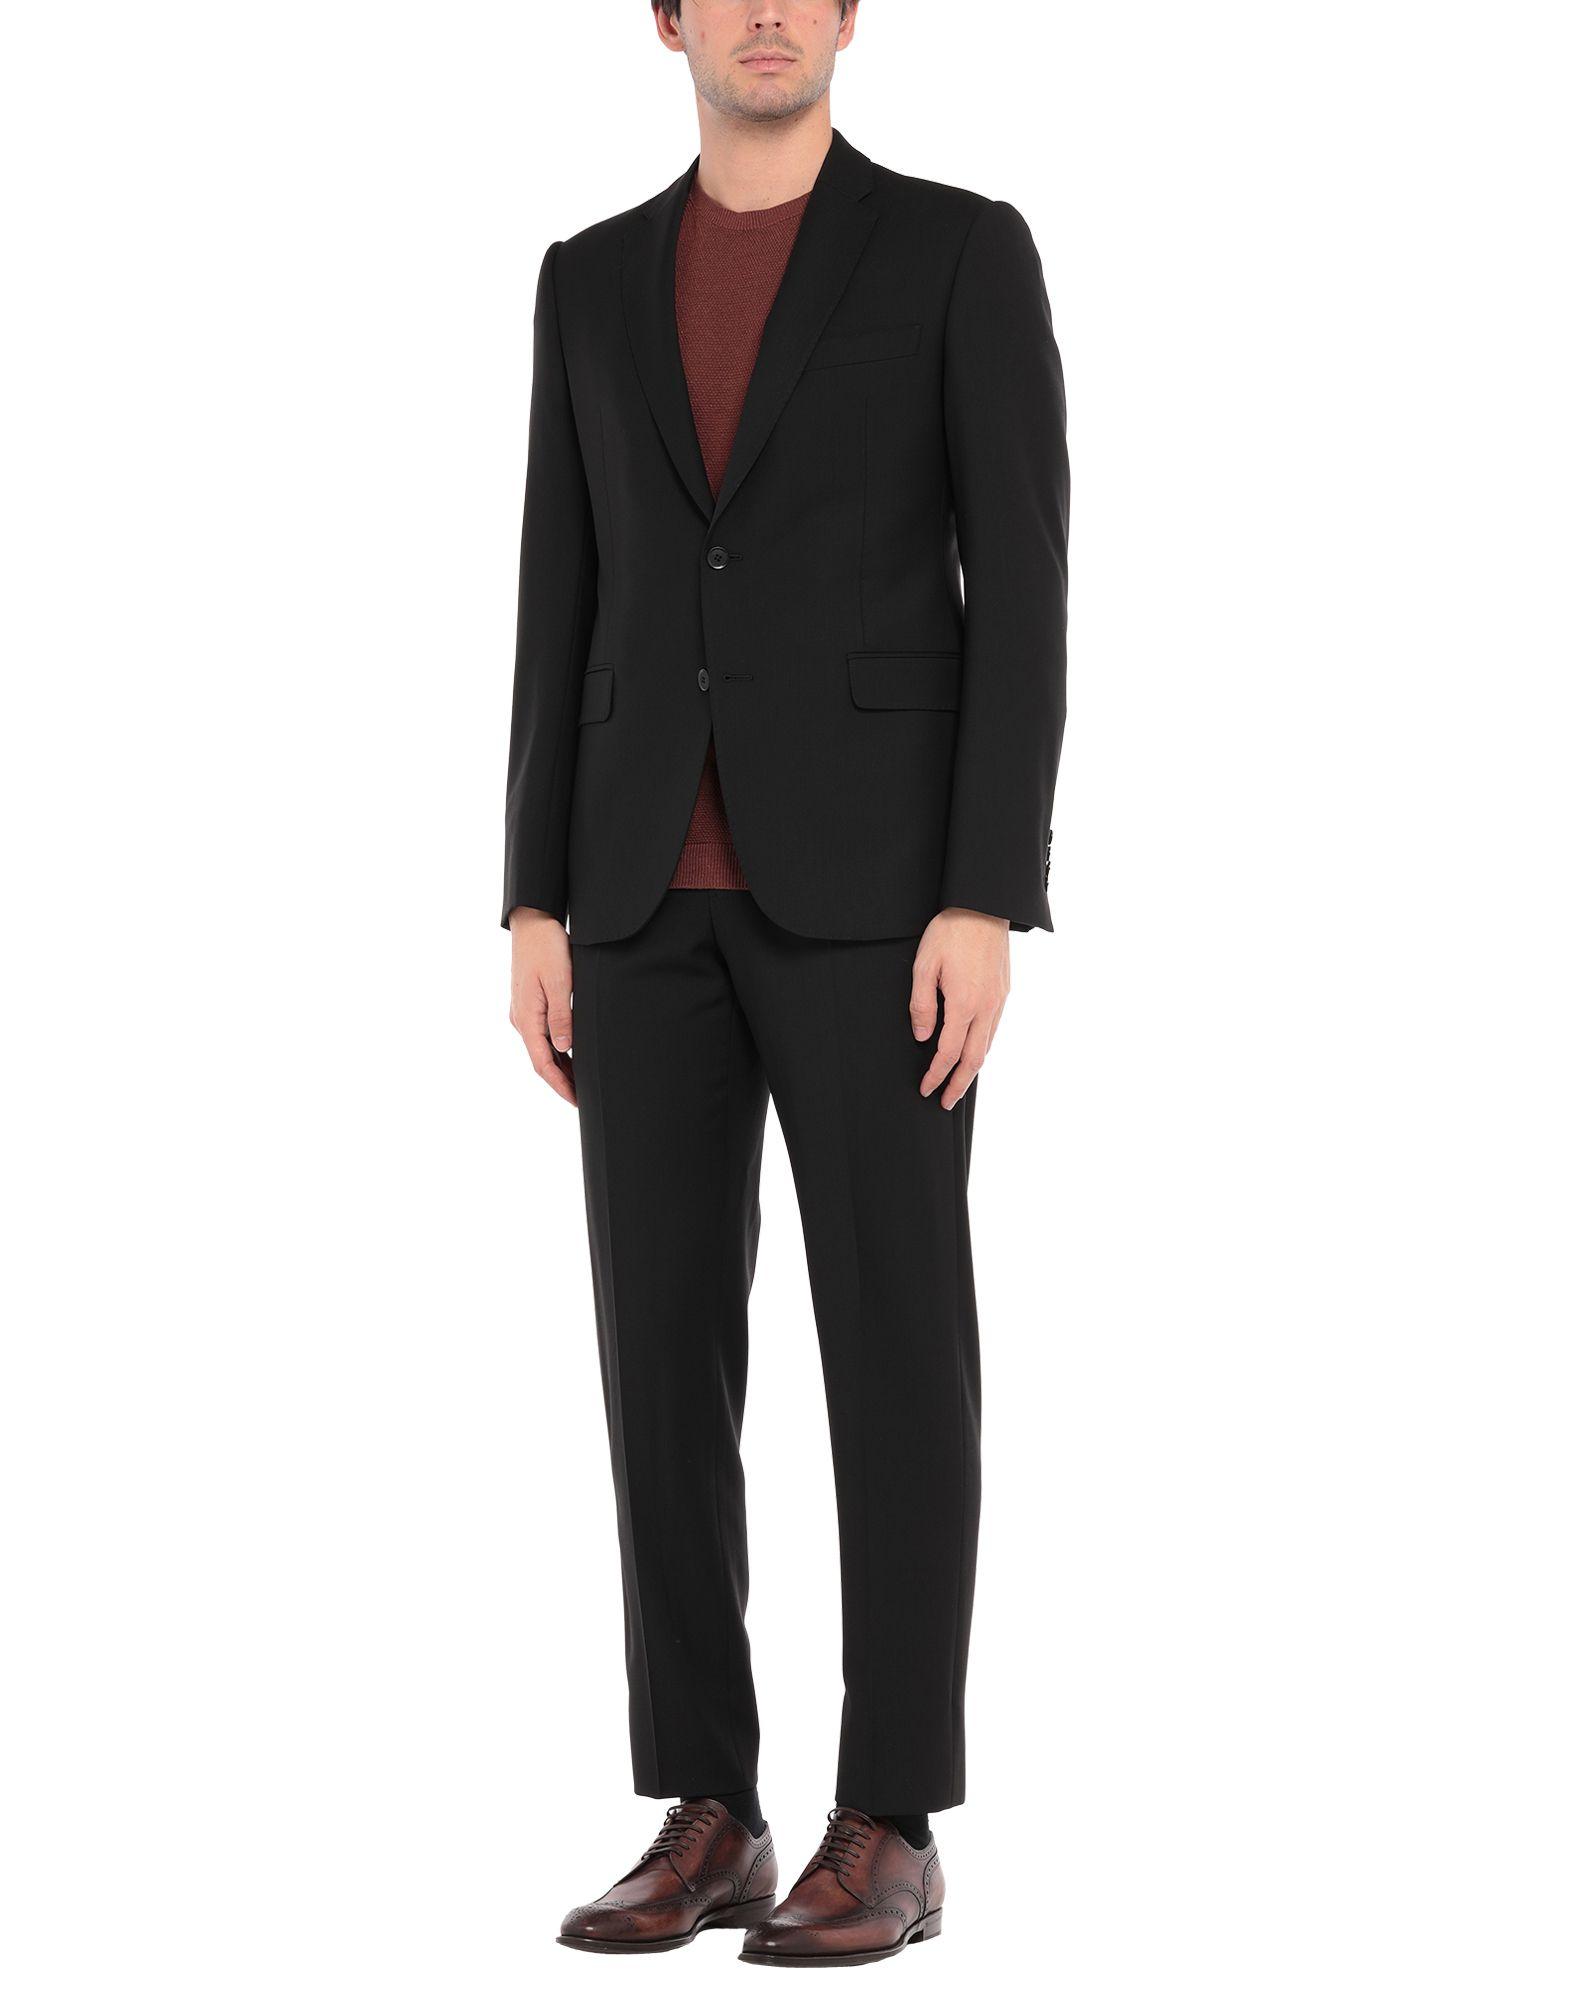 Emporio Armani Suit in Black for Men - Lyst